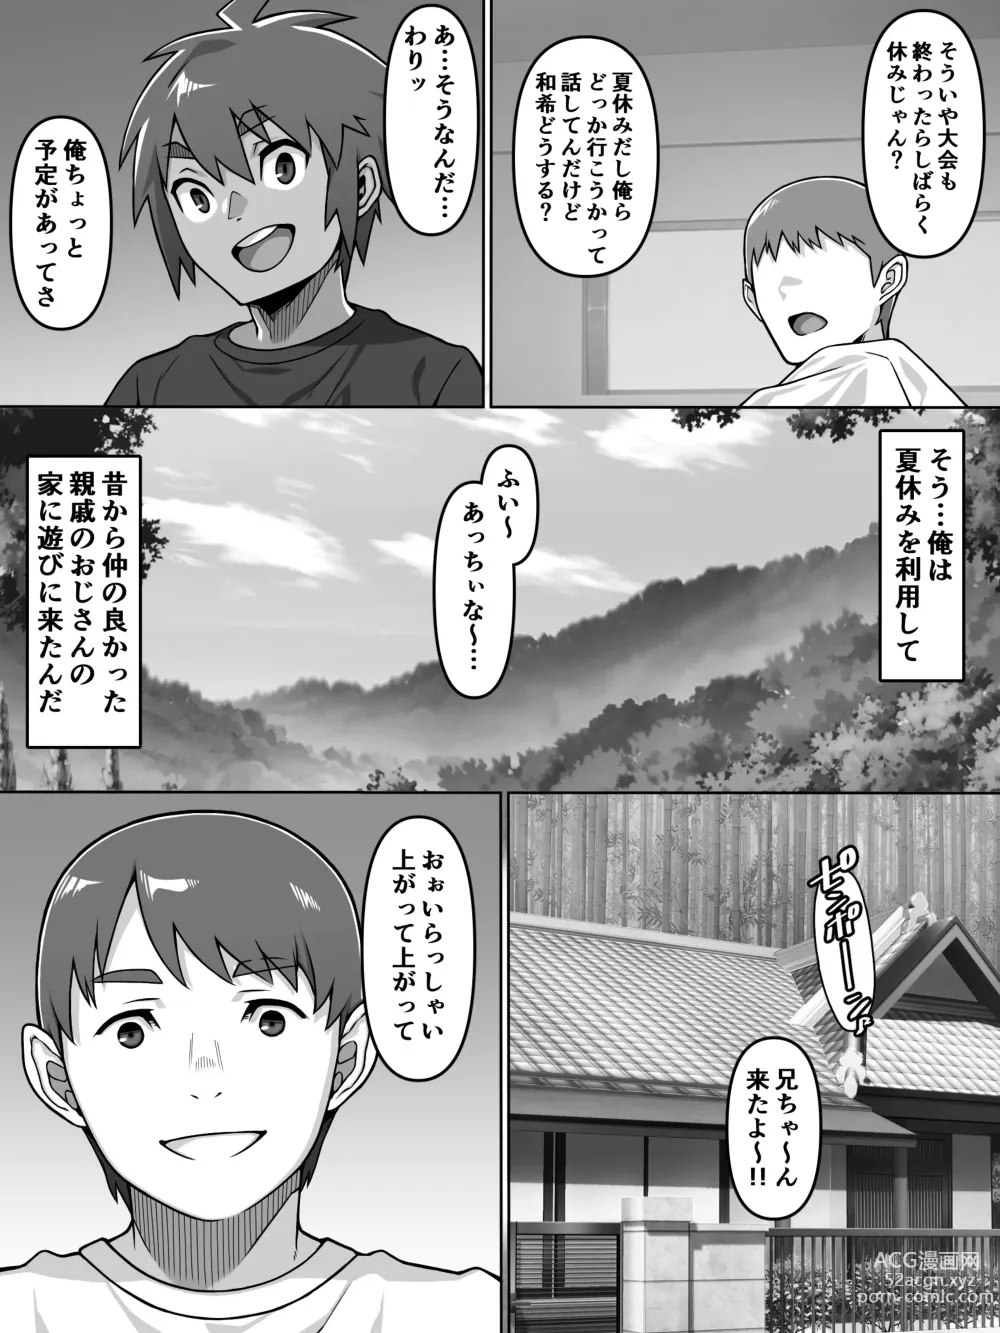 Page 4 of doujinshi Oi Ai